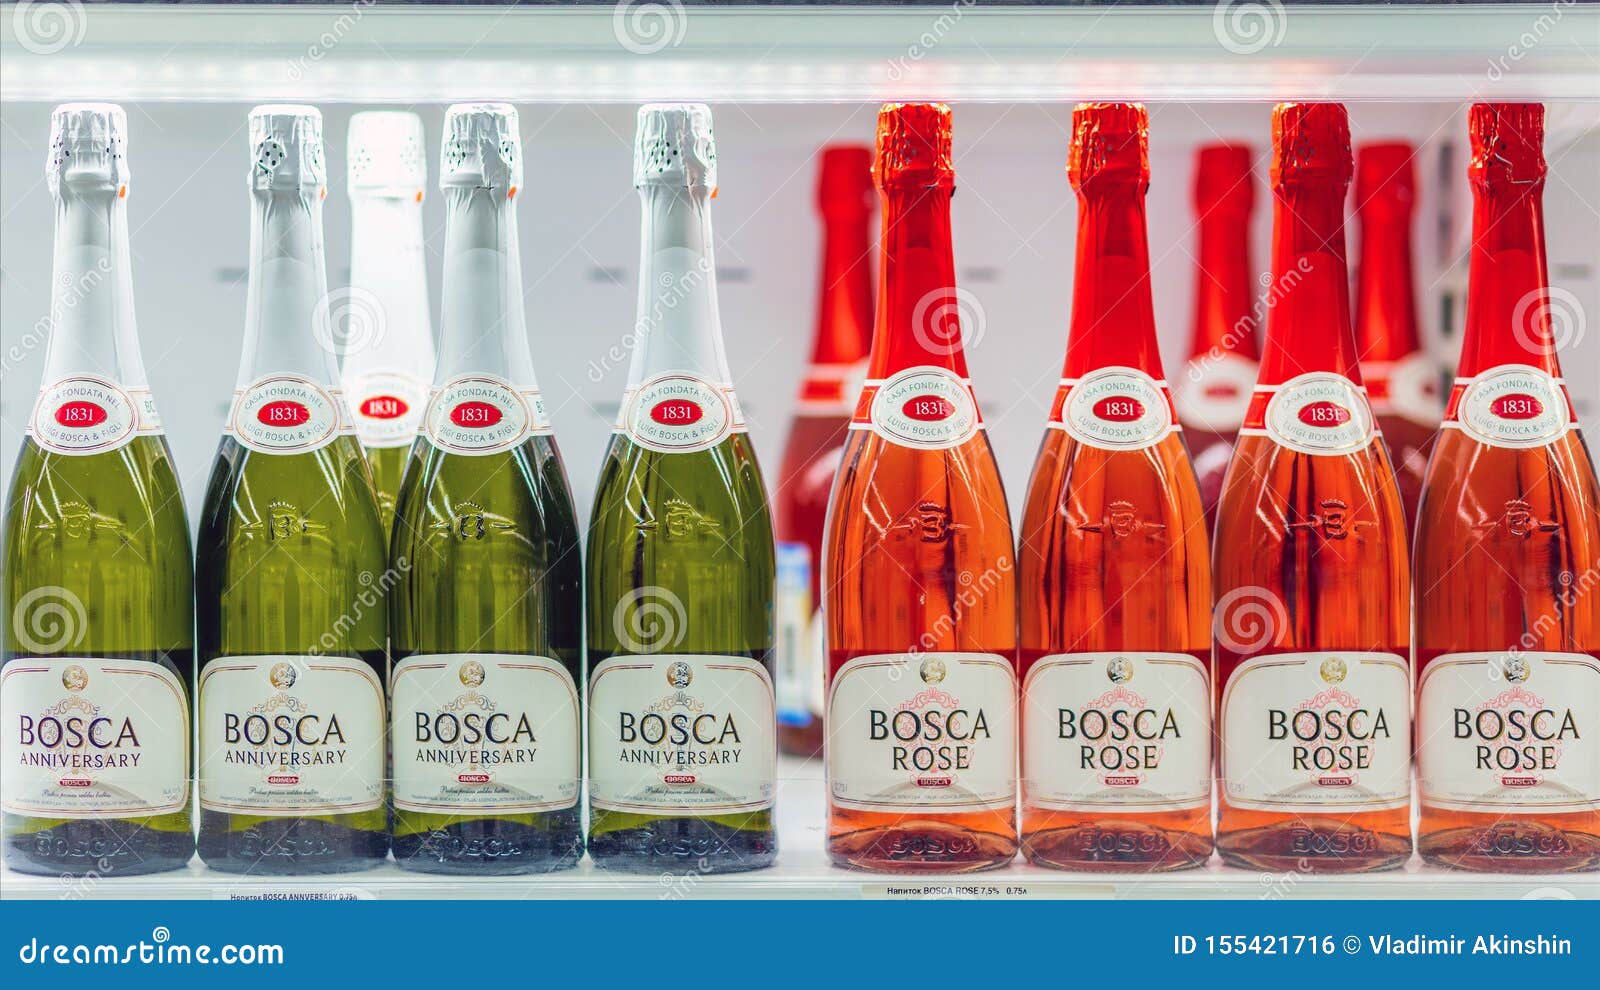 Боско красная цена. Bosca Rose. Шампанское Rose Bosco. Bosca шампанское розовое. Боска Розе Лимитед.